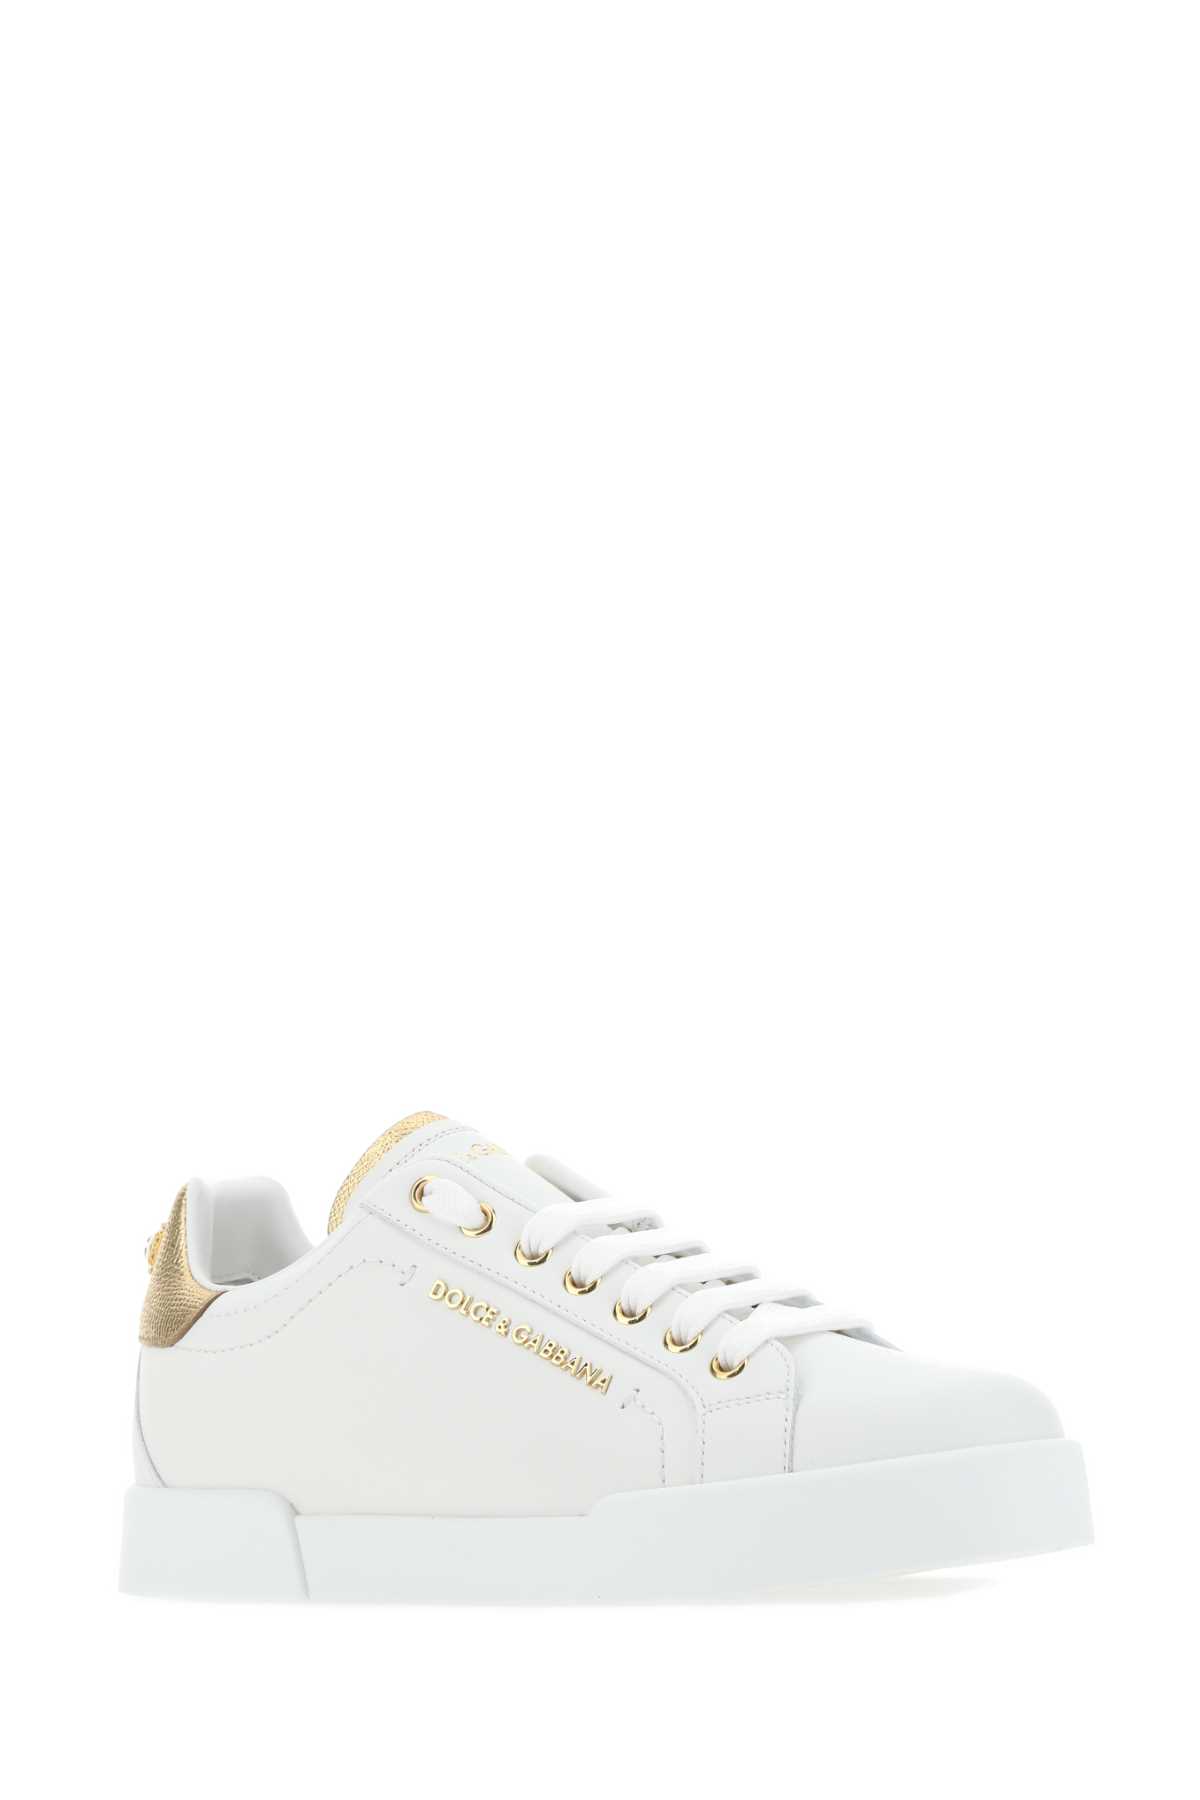 Dolce & Gabbana White Nappa Leather Portofino Sneakers In 8b996